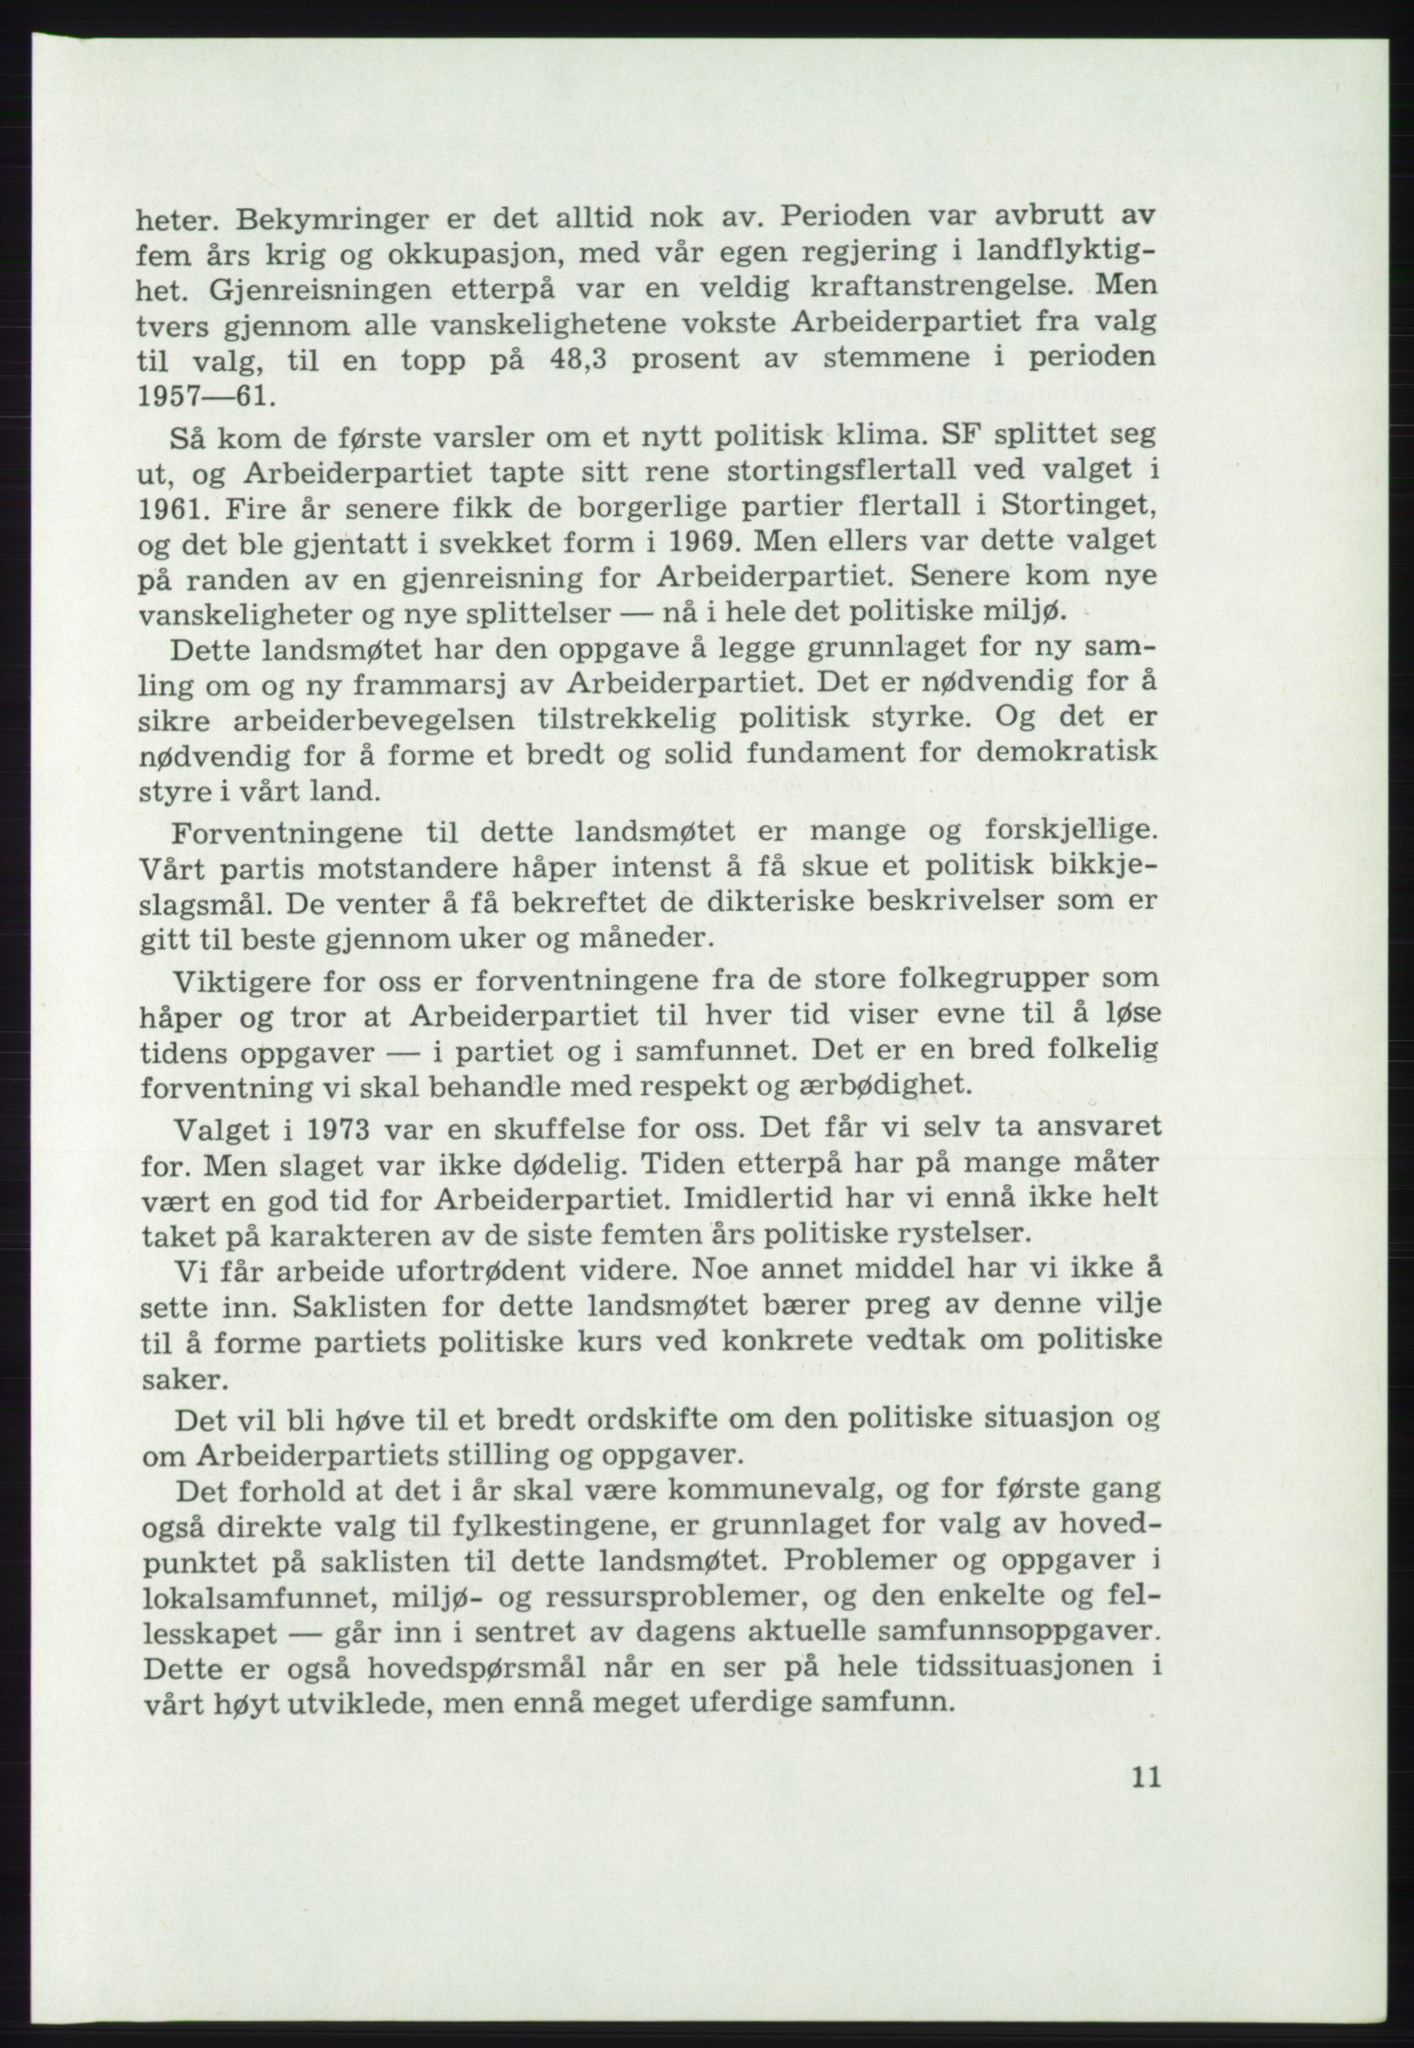 Det norske Arbeiderparti - publikasjoner, AAB/-/-/-: Protokoll over forhandlingene på det 46. ordinære landsmøte 20.-23. april 1975, 1975, s. 11